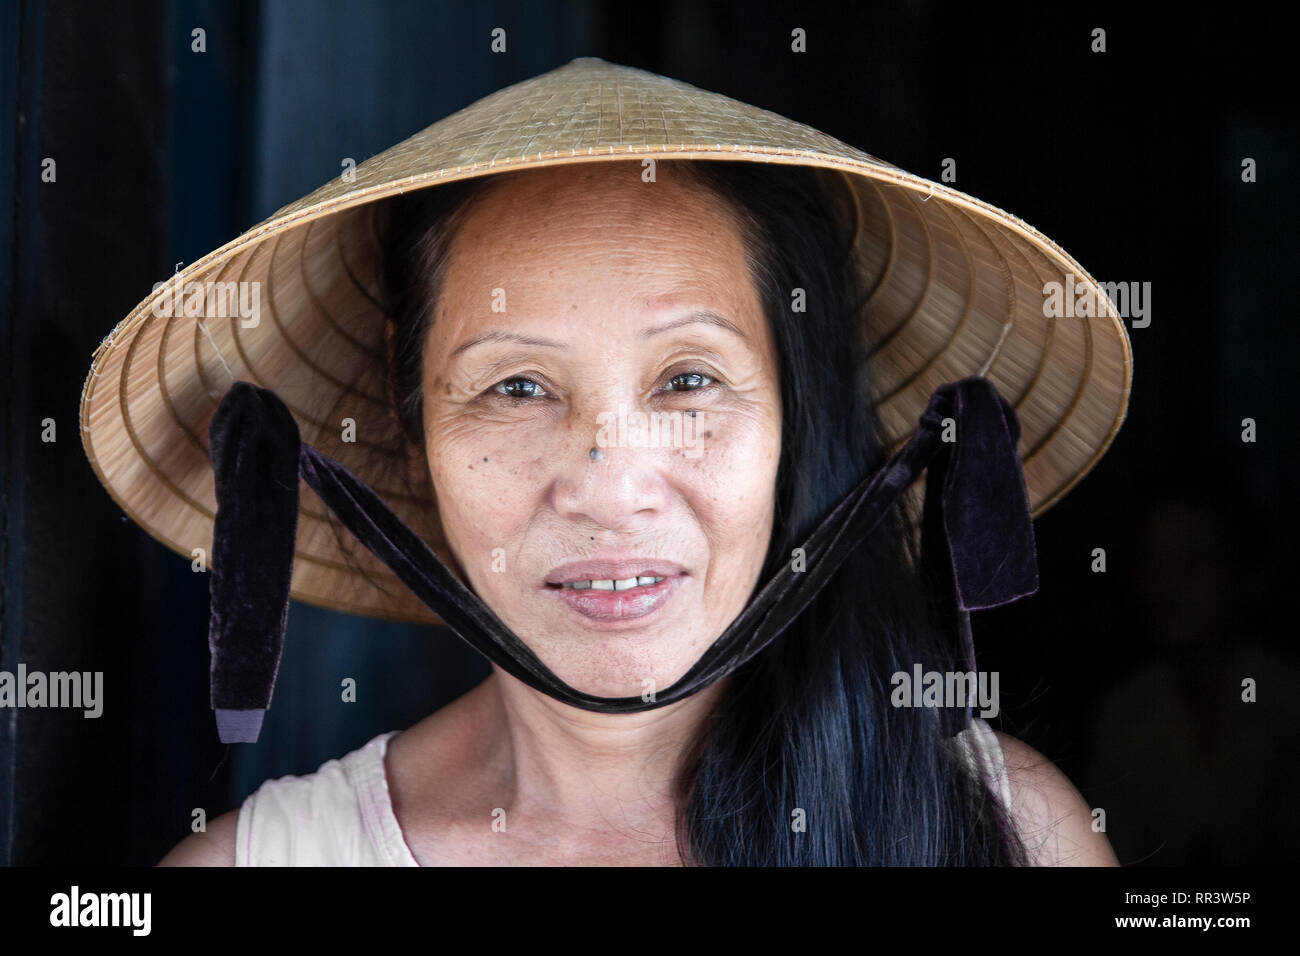 Nahaufnahme Gesicht portrait von Vietnam Frau mit konischen hat Stockfoto